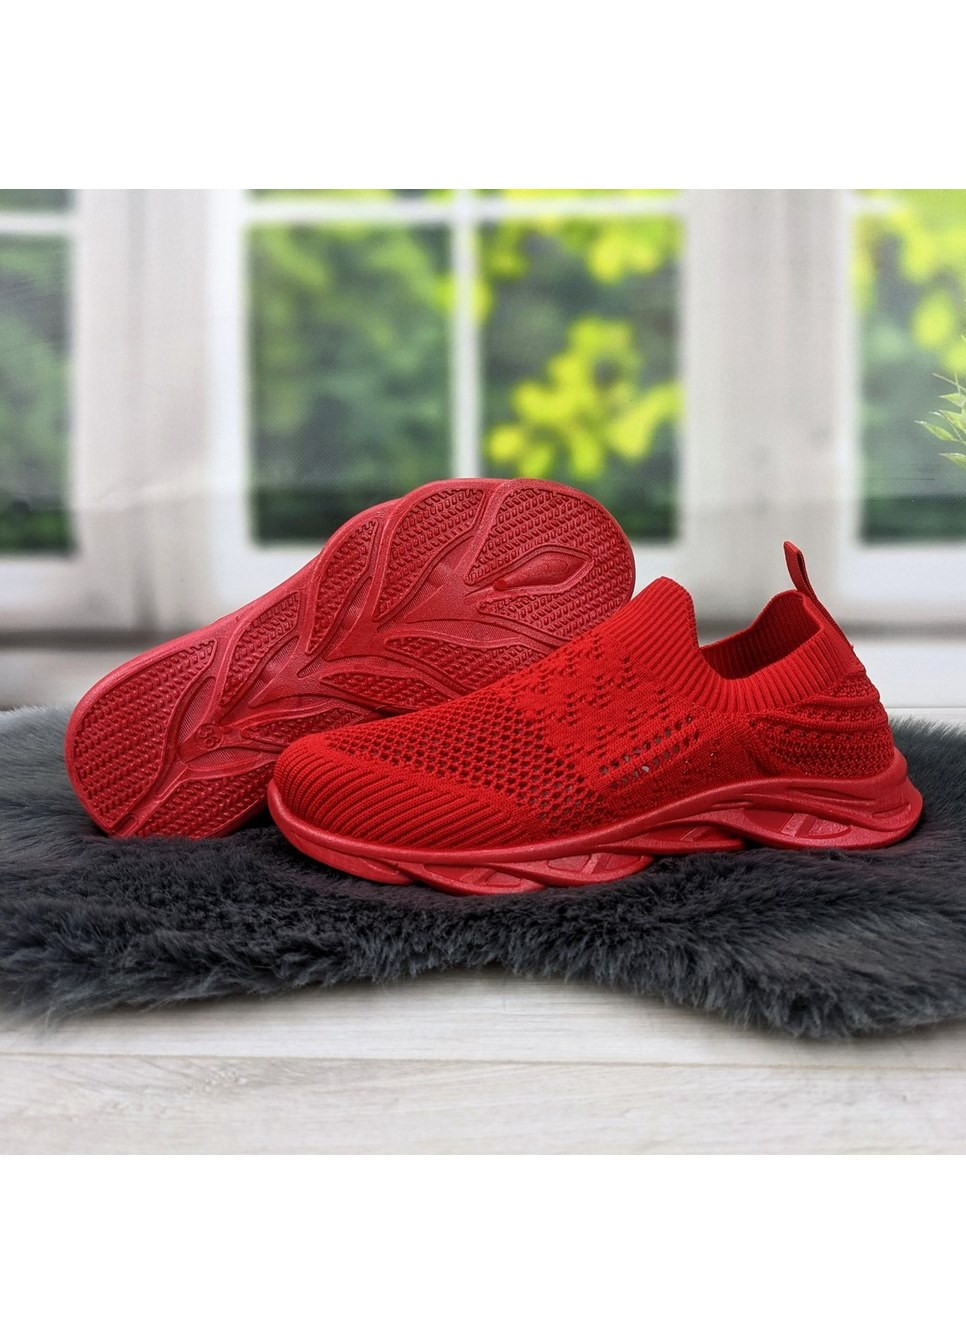 Червоні осінні кросівки жіночі текстильні з перфорацією Gipanis